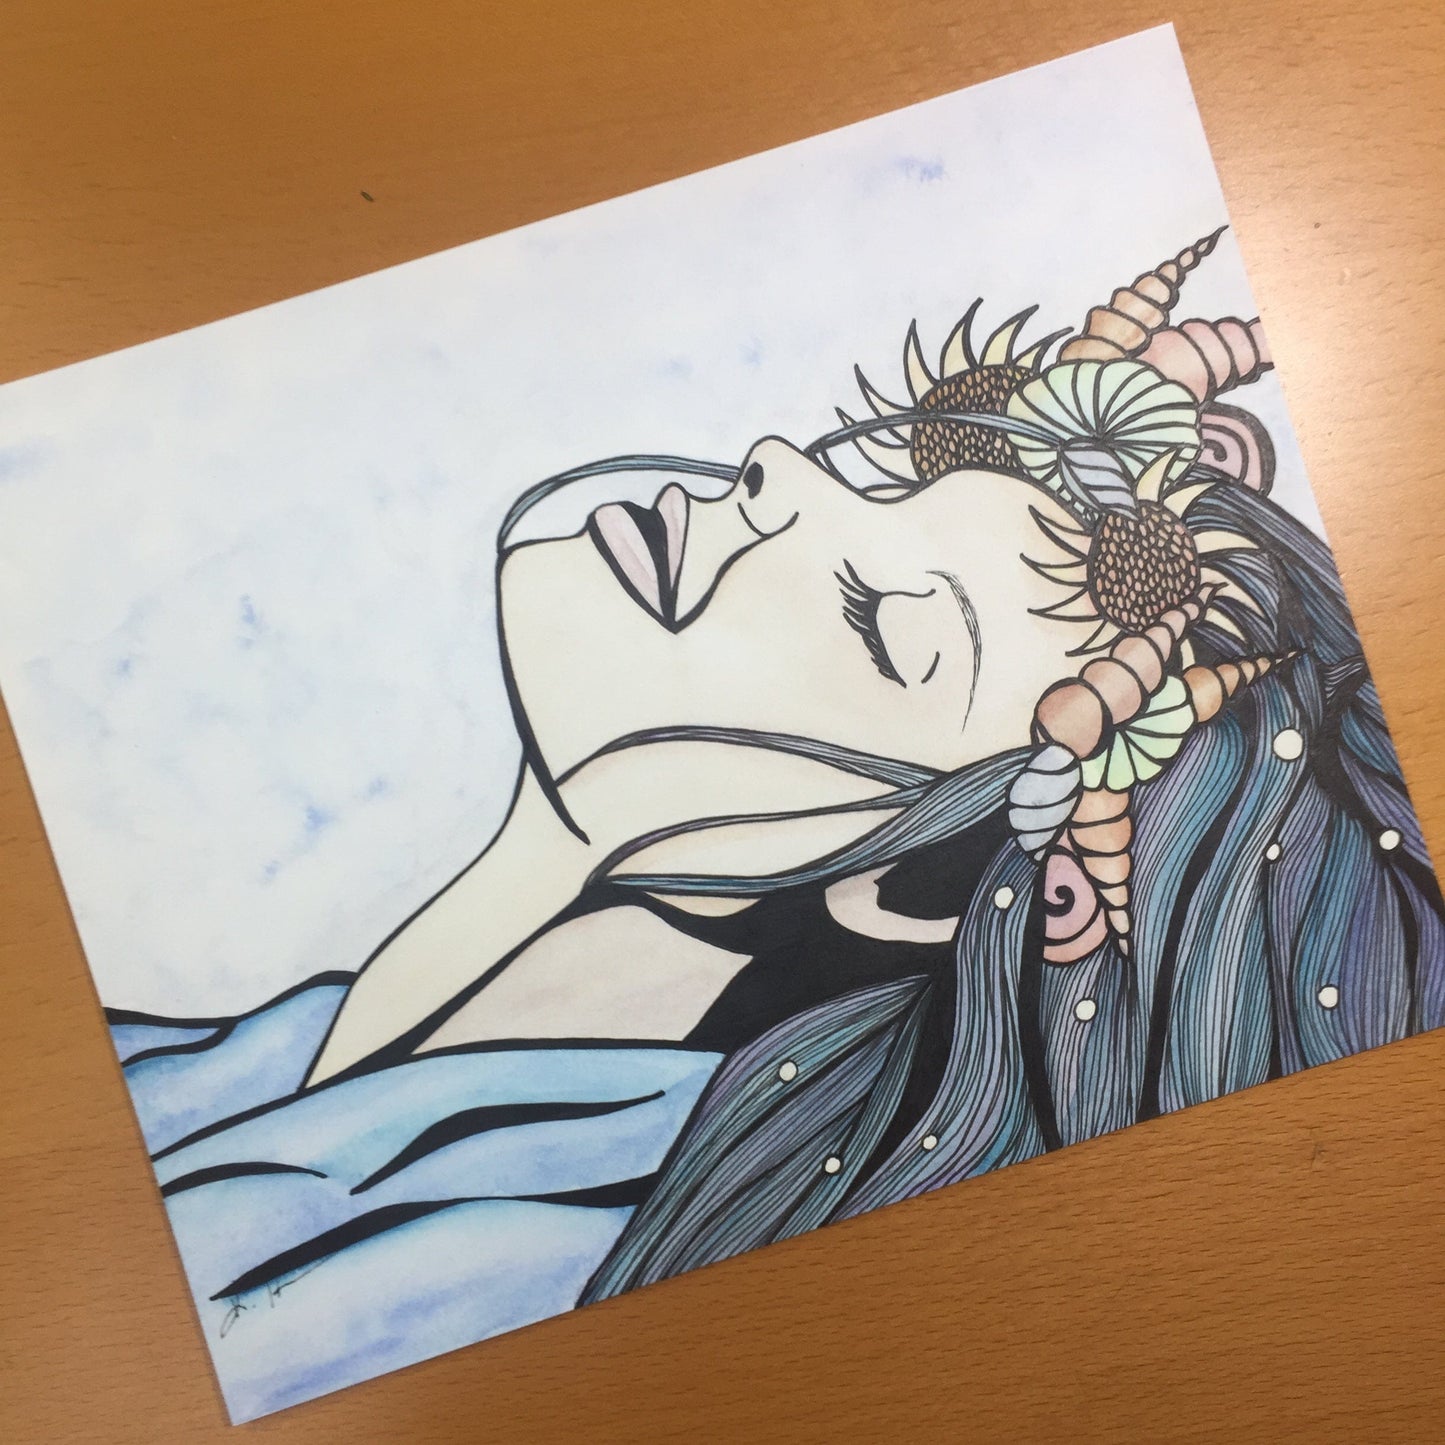 PinkPolish Design Original Art "Basking" Mermaid Inspired Original Watercolor & Ink Illustration